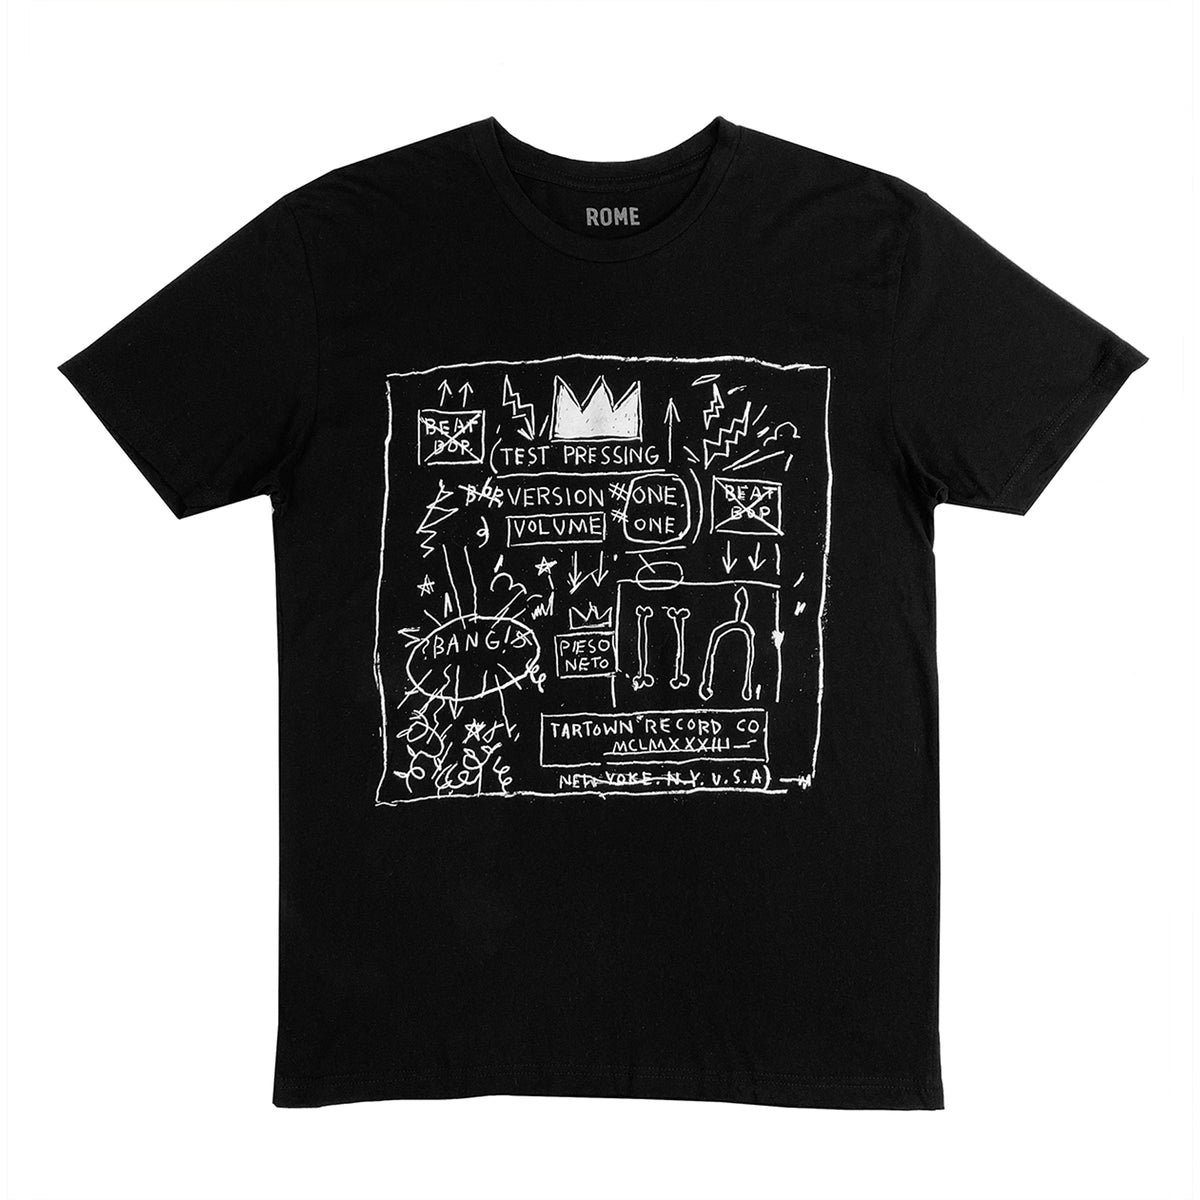 Basquiat "Beat Bop" T-Shirt